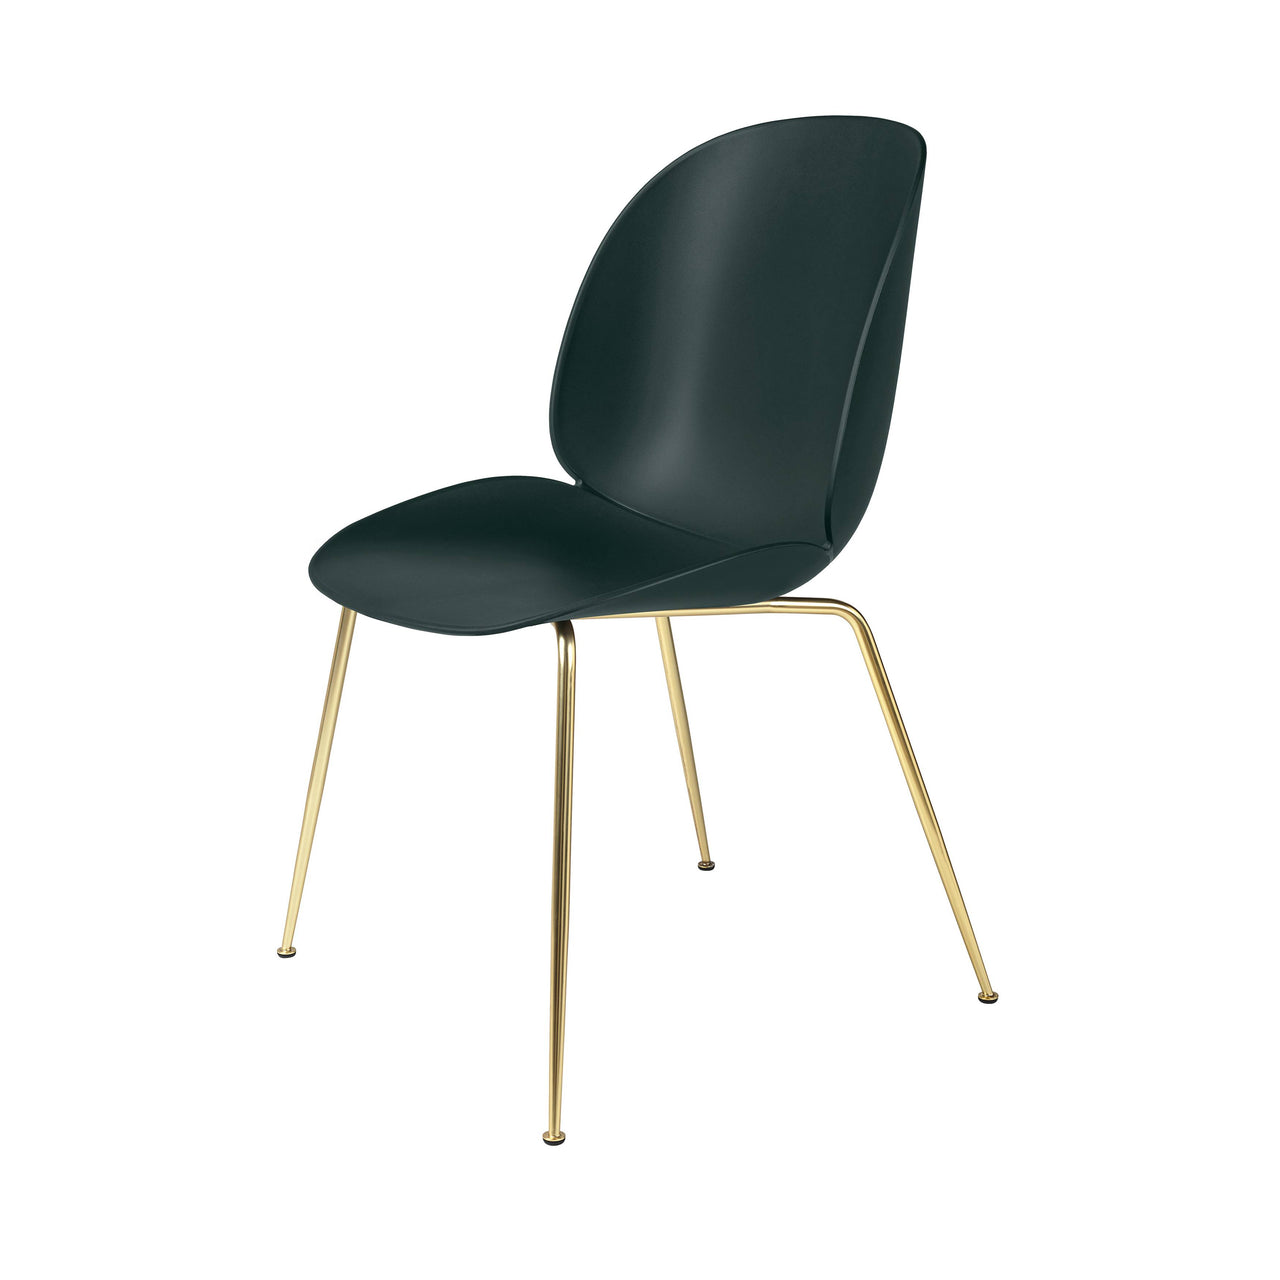 Beetle Dining Chair: Conic Base + Dark Green + Brass Semi Matt + Felt Glides